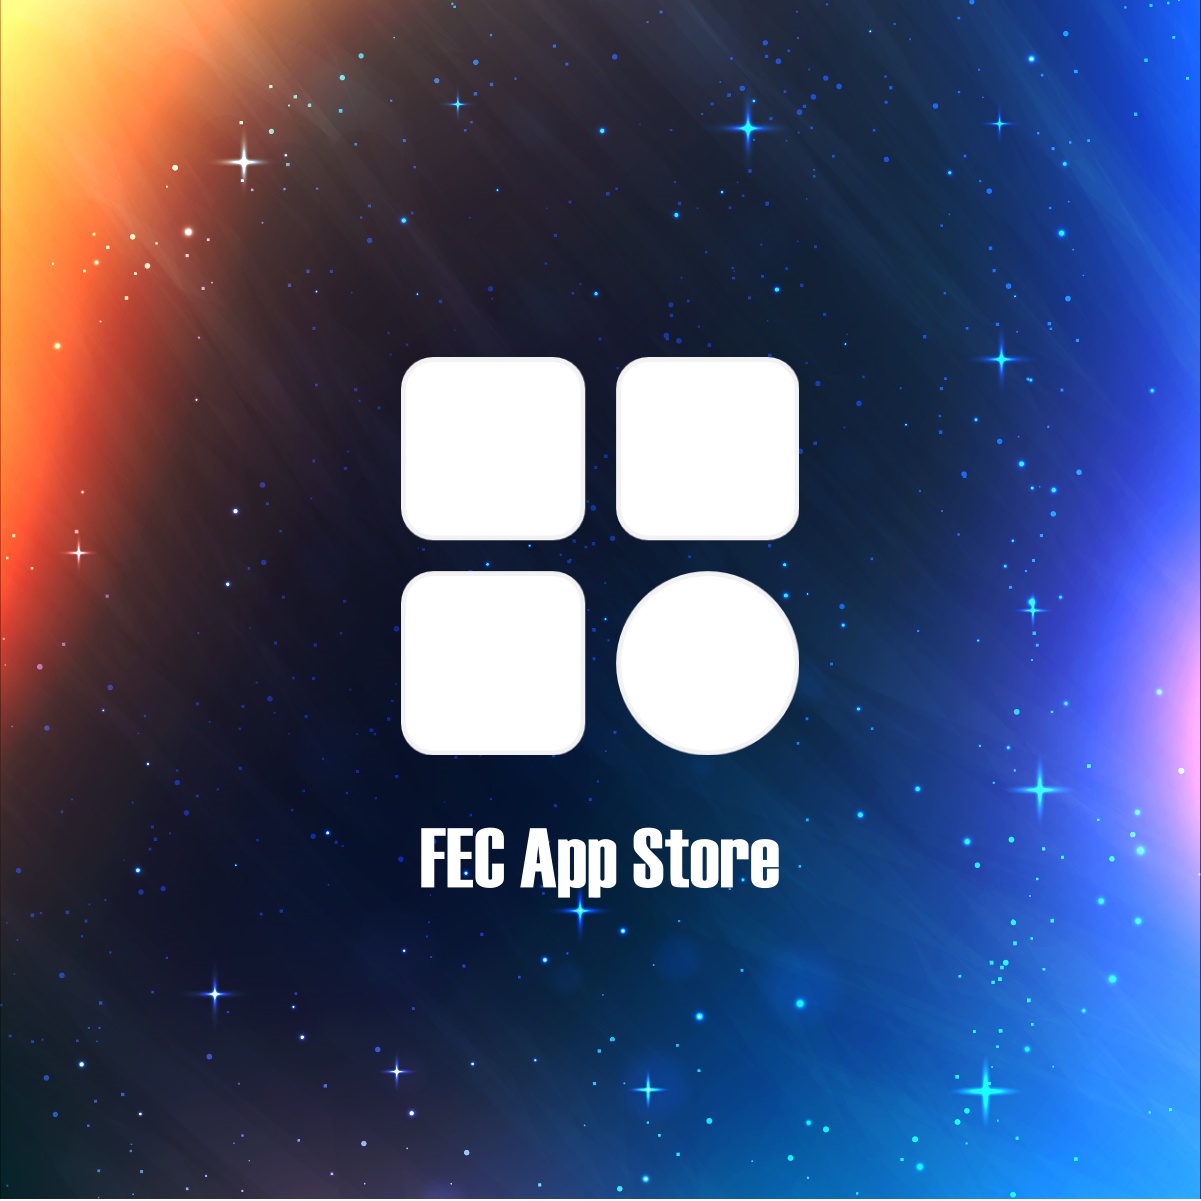 FEC App Store